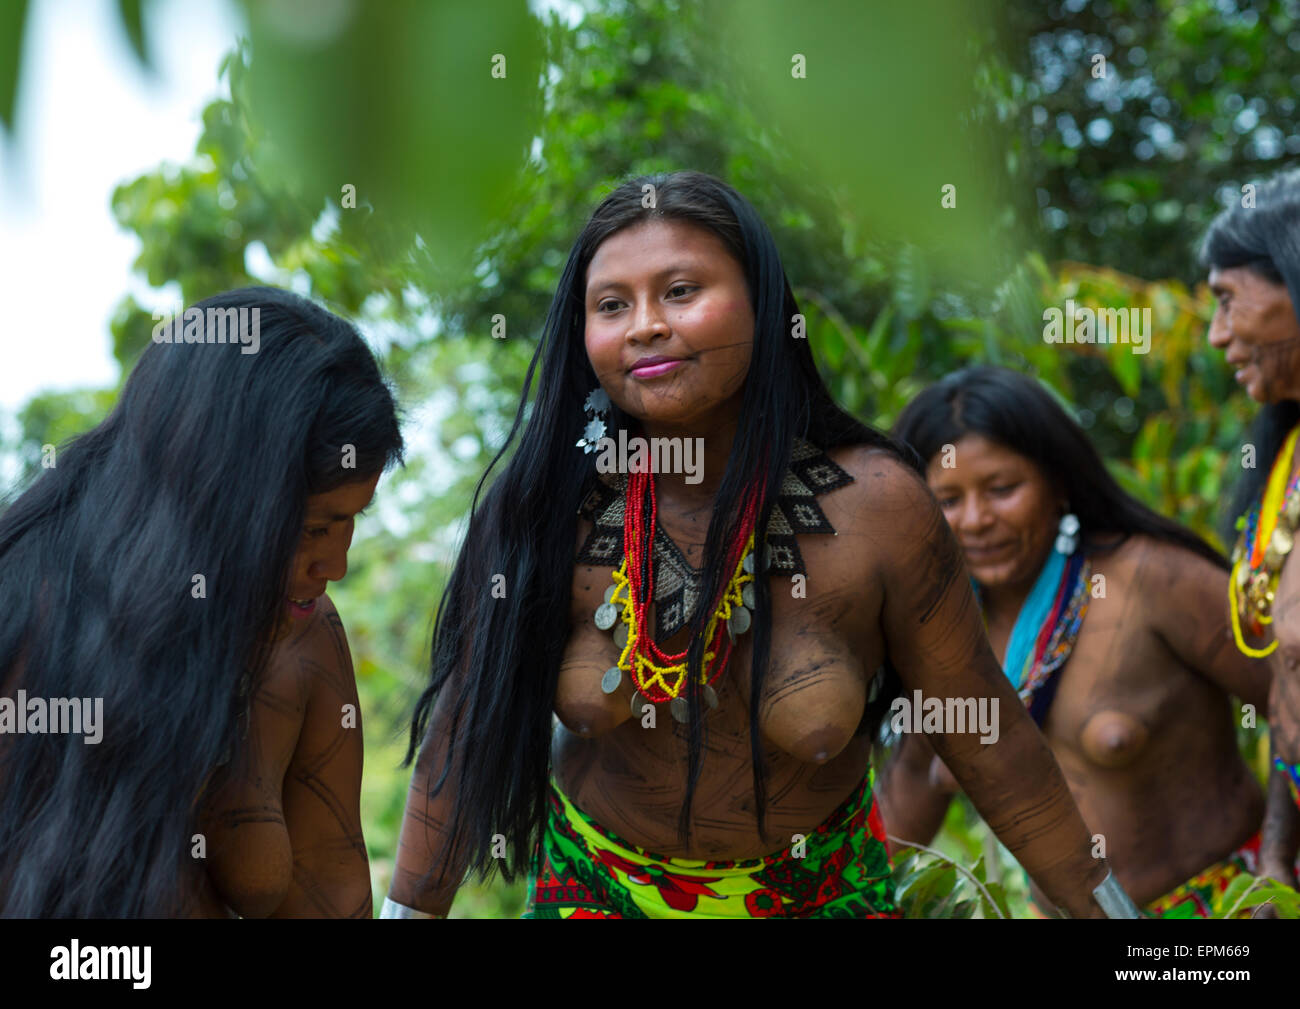 Nude Photos Of Panama Panama Women 97